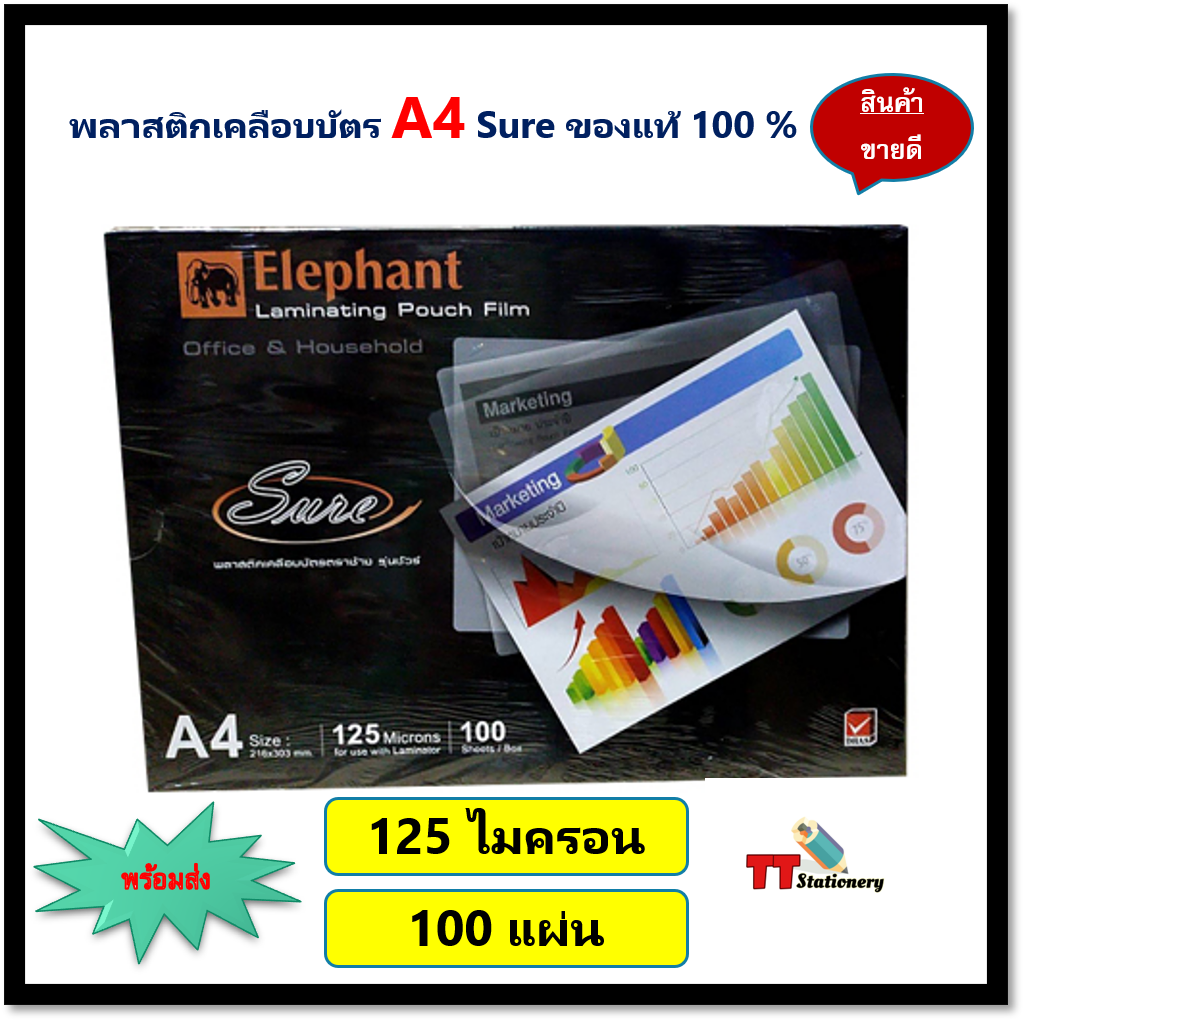 พลาสติกเคลือบบัตร A4 Elephant laminating pouch film 125mc. (100แผ่น) รุ่น Sure ของแท้ 100 %